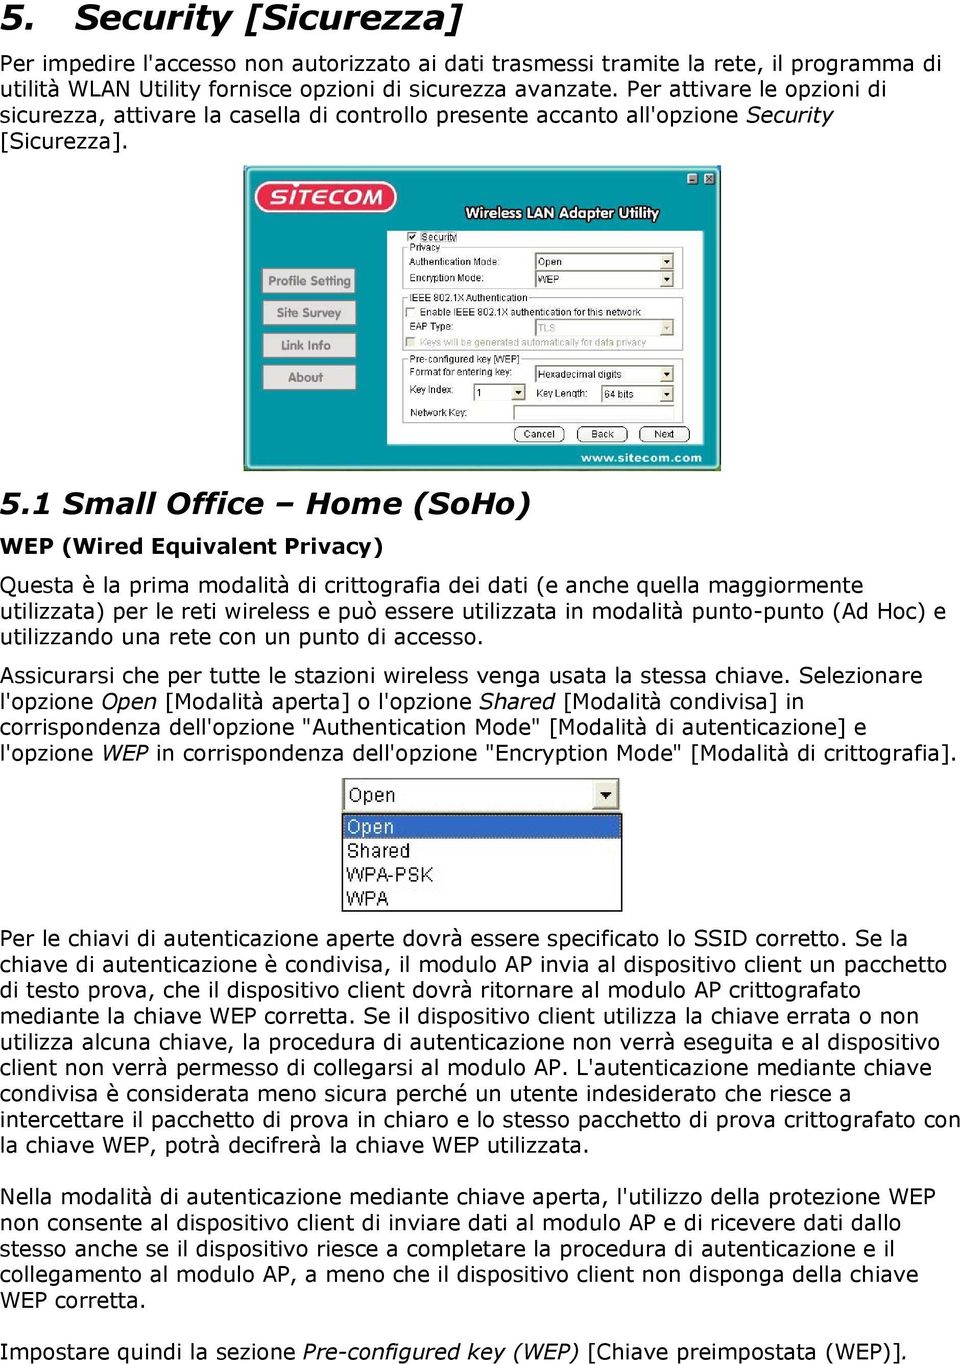 1 Small Office Home (SoHo) WEP (Wired Equivalent Privacy) Questa è la prima modalità di crittografia dei dati (e anche quella maggiormente utilizzata) per le reti wireless e può essere utilizzata in